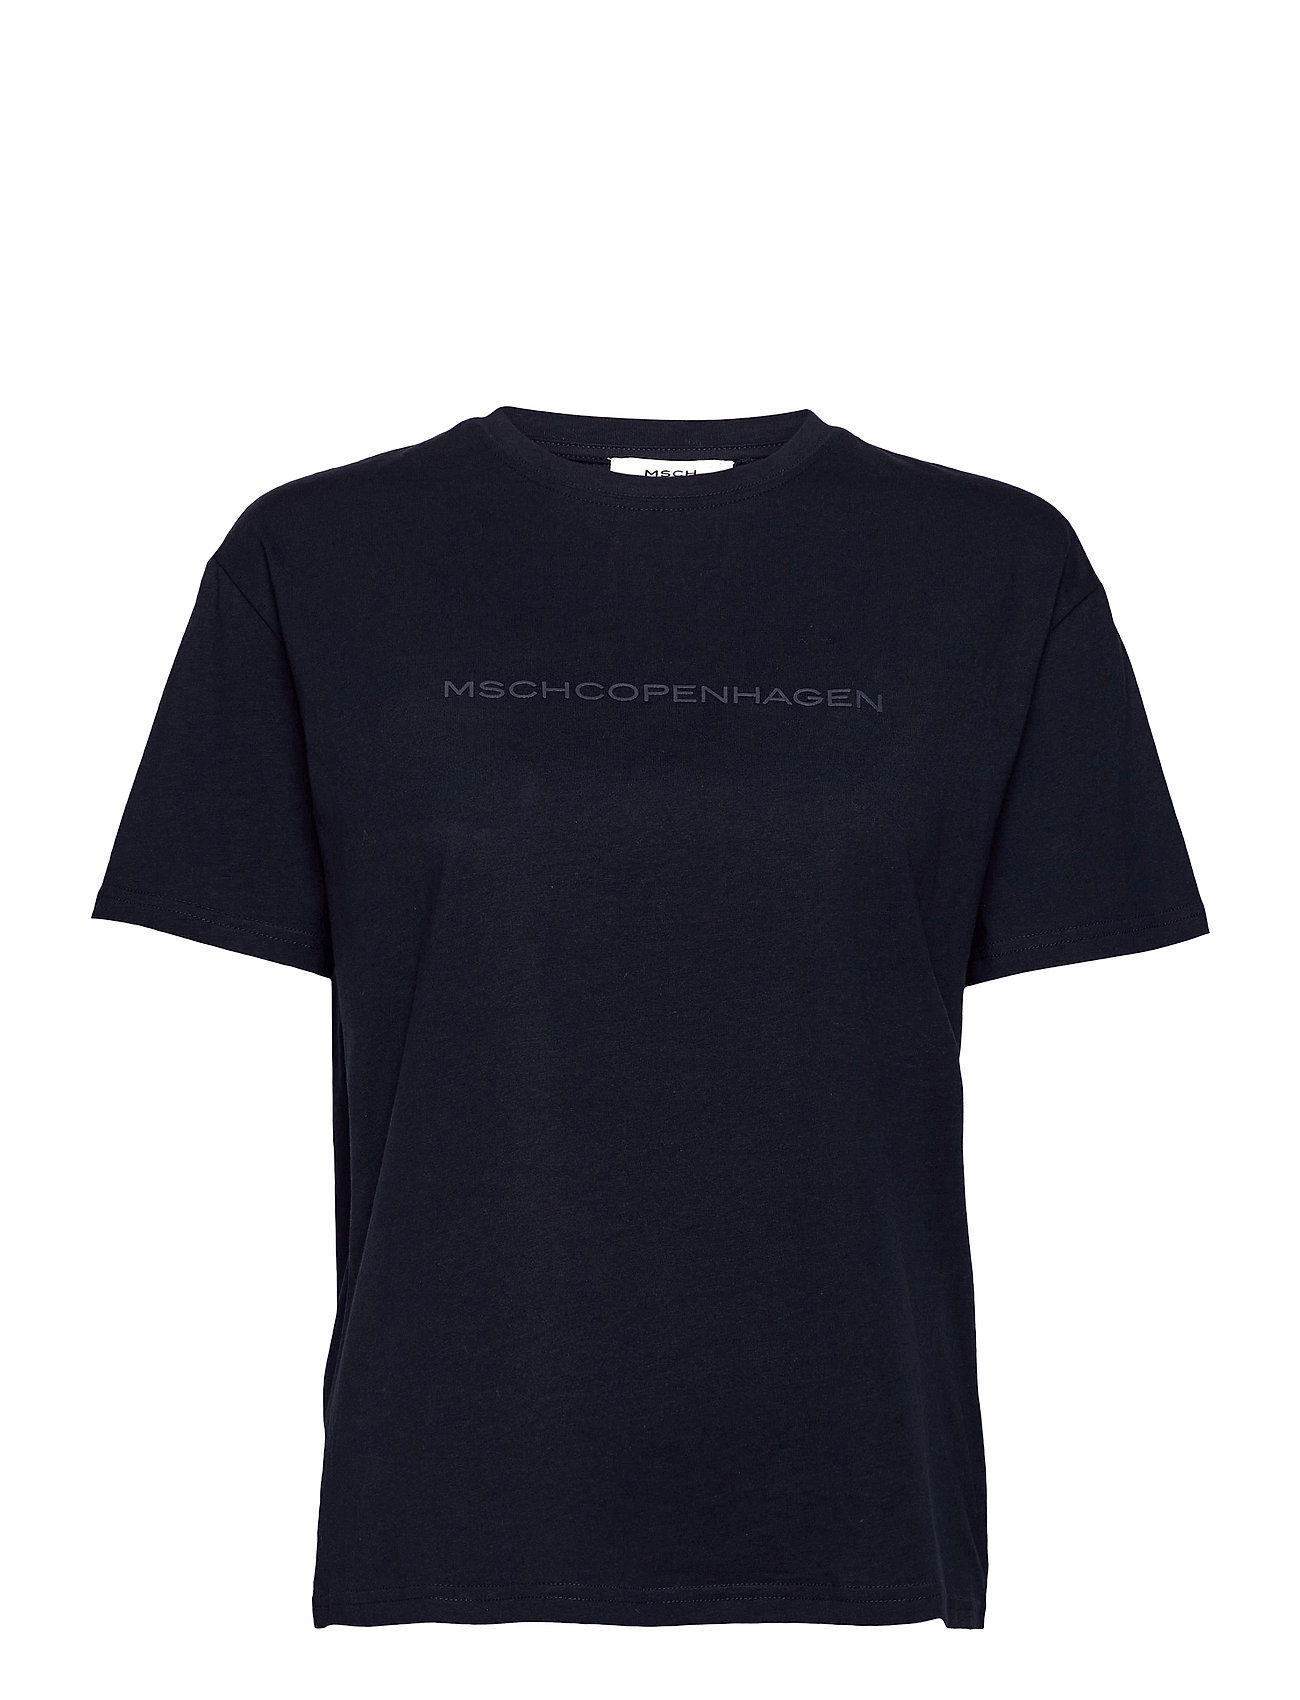 Liv Organic Logo Tee T-shirts & Tops Short-sleeved Svart MOSS COPENHAGEN